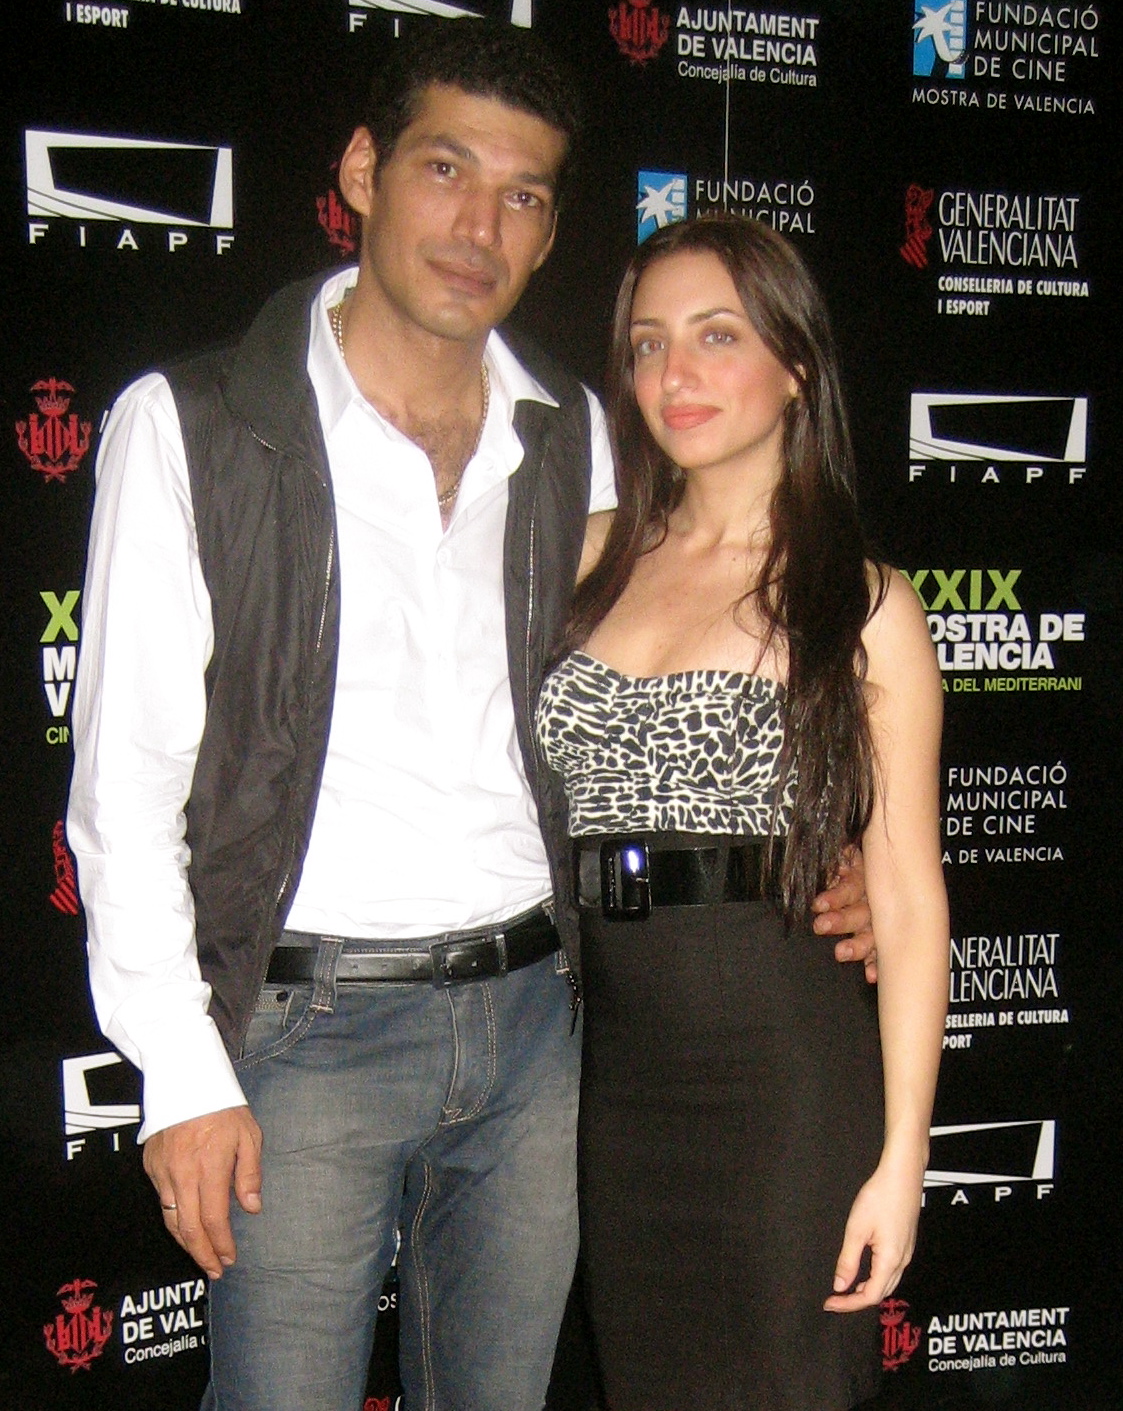 Basra Movie Premiere with co-star Bassem Samra in Spain